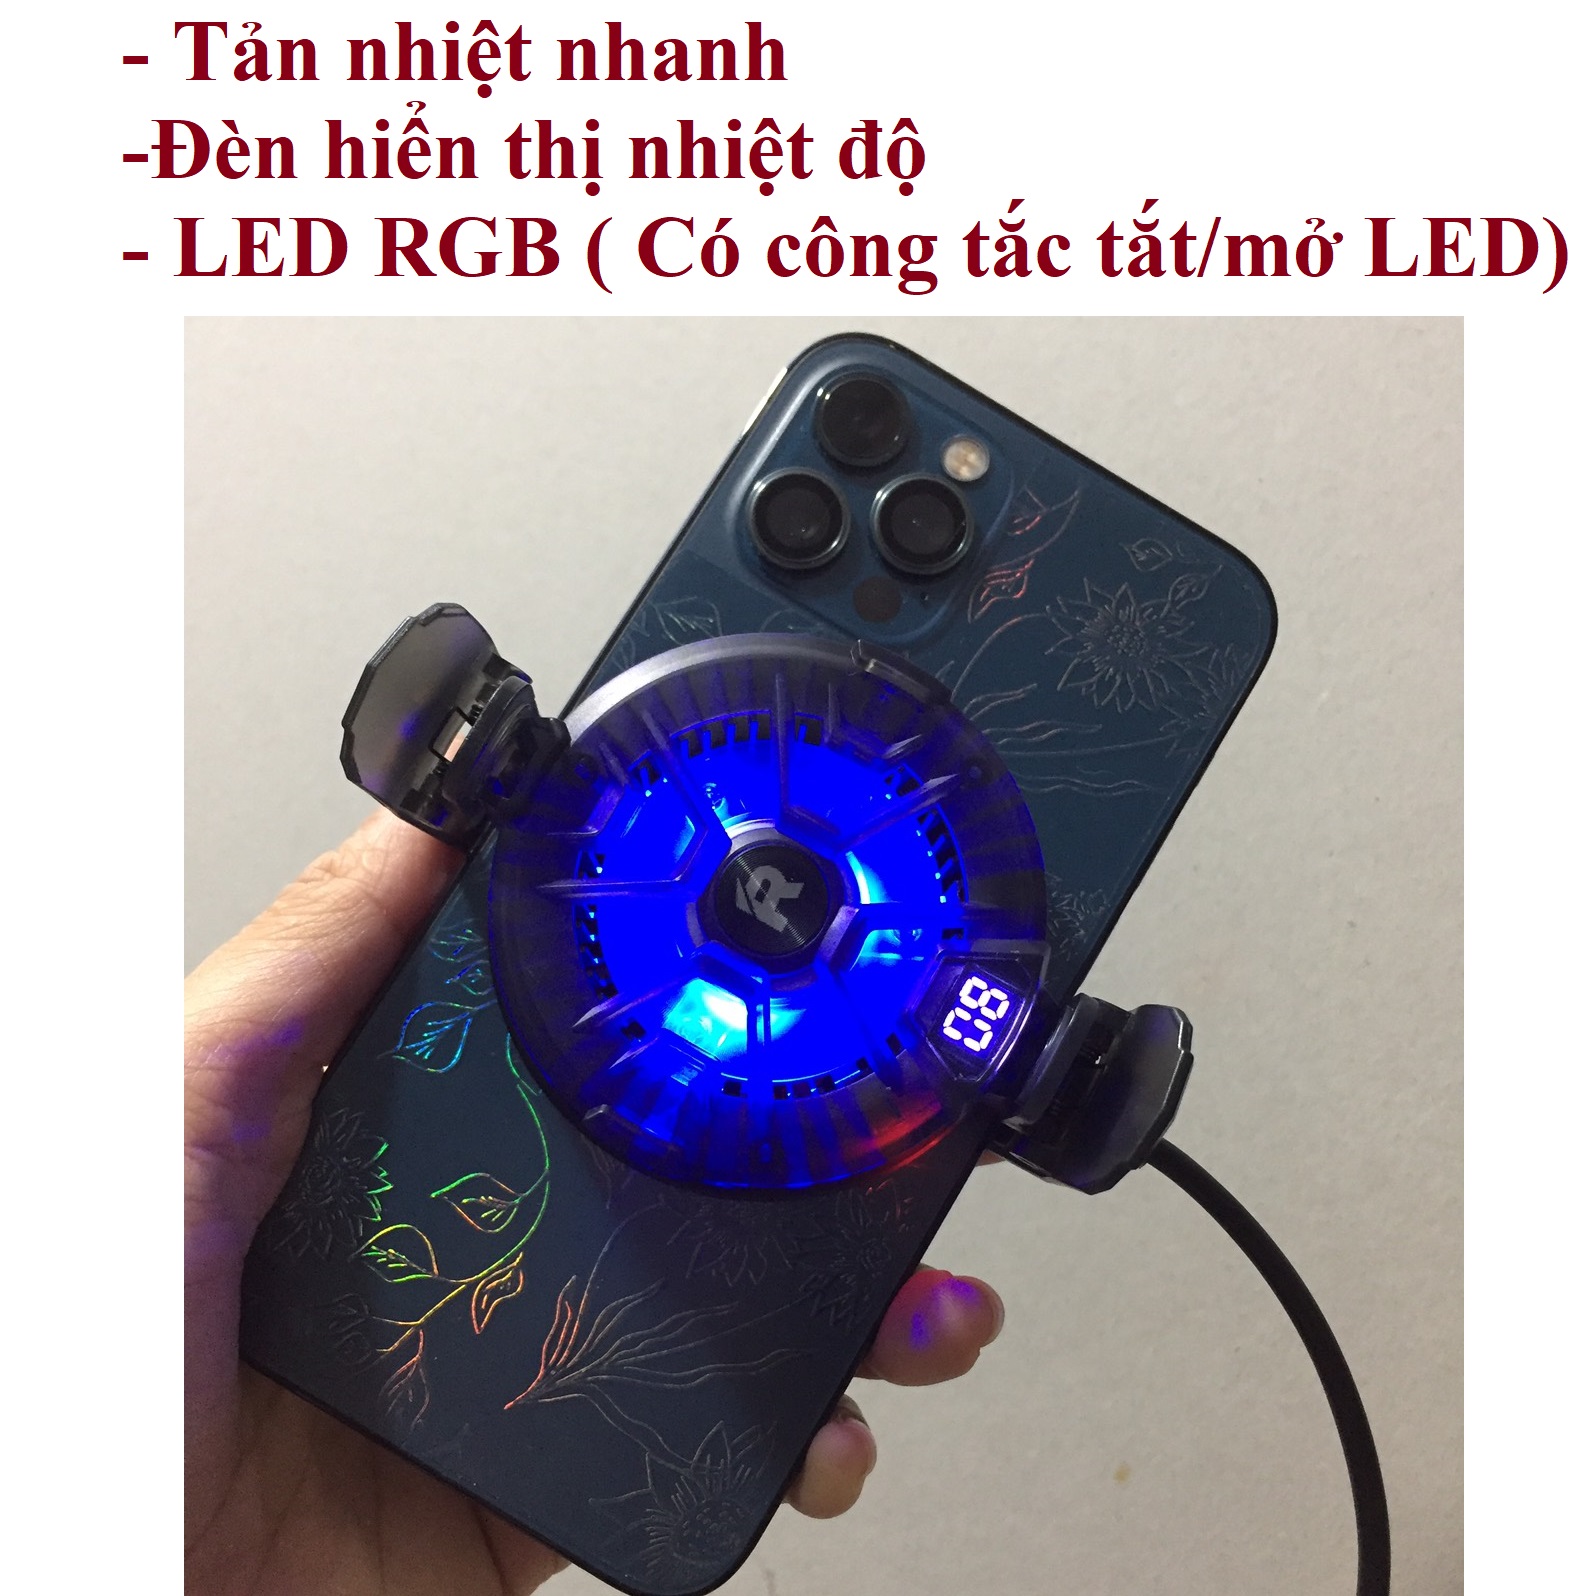 Sò lạnh điện thoại Quạt tản nhiệt LED RGB cho điện thoại Remax Fonfan Series RT-F4 _ Hàng chính hãng